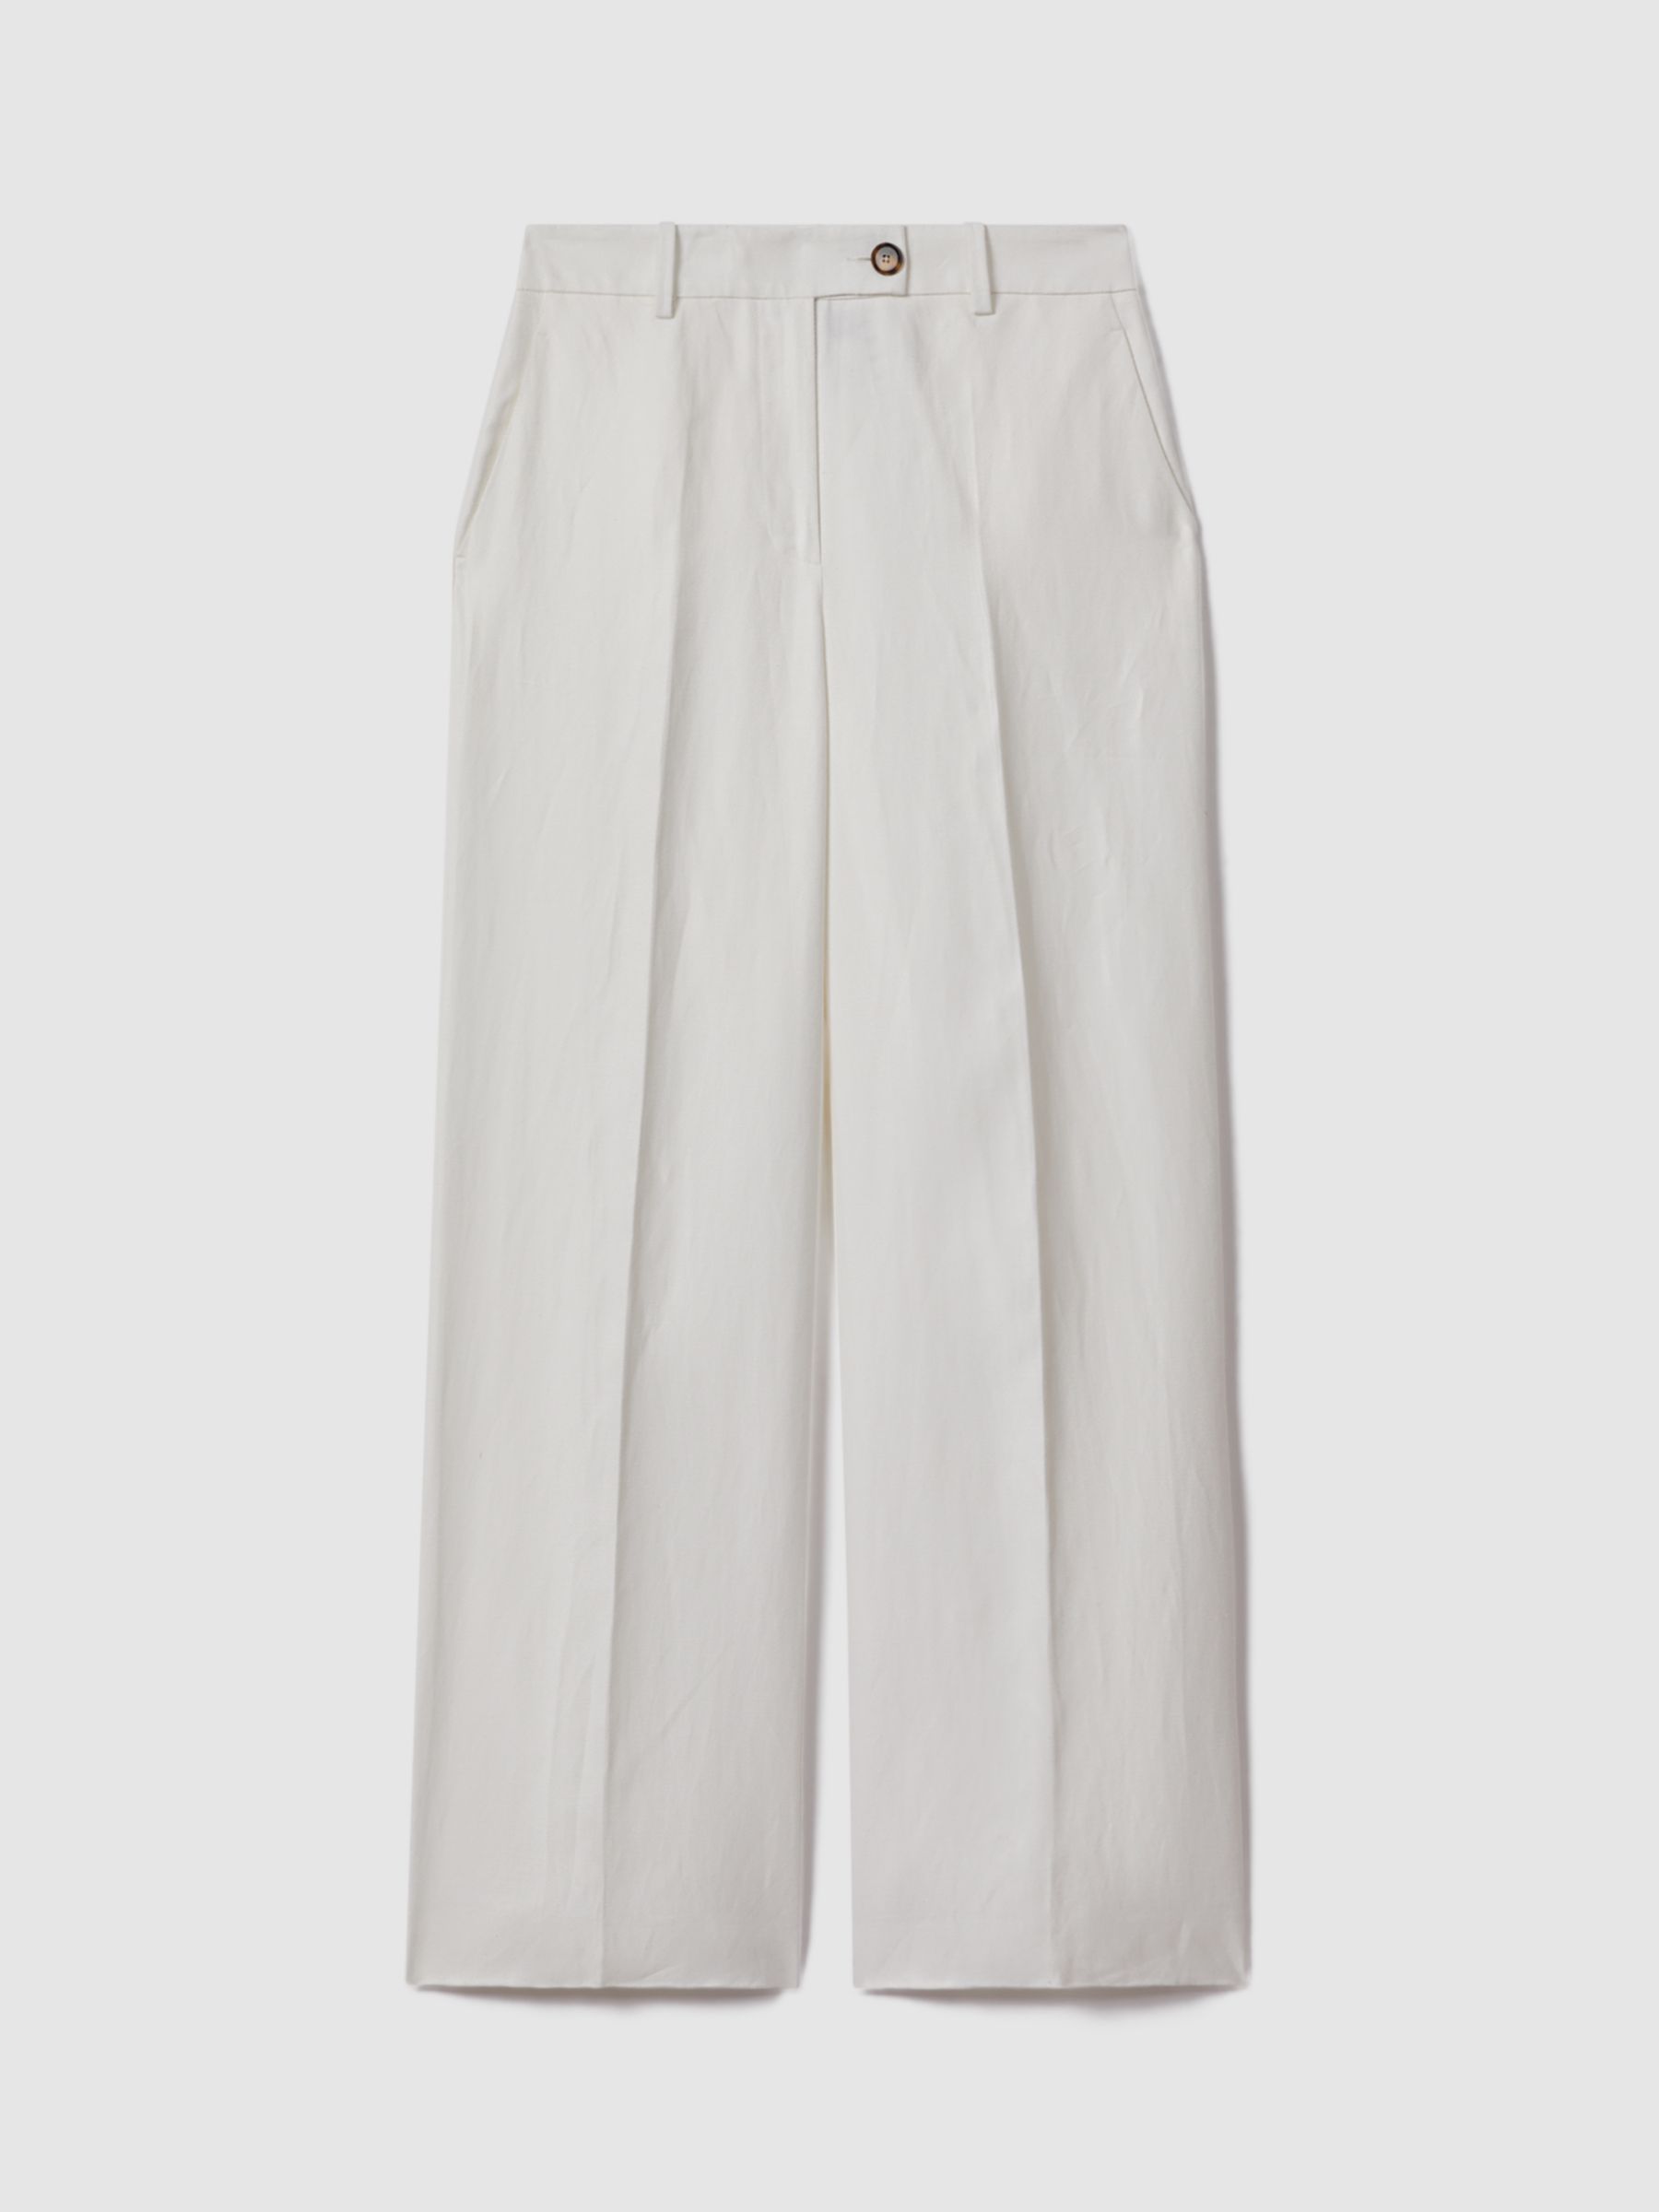 Reiss Lori Linen Blend Wide Leg Trousers, White, 12R